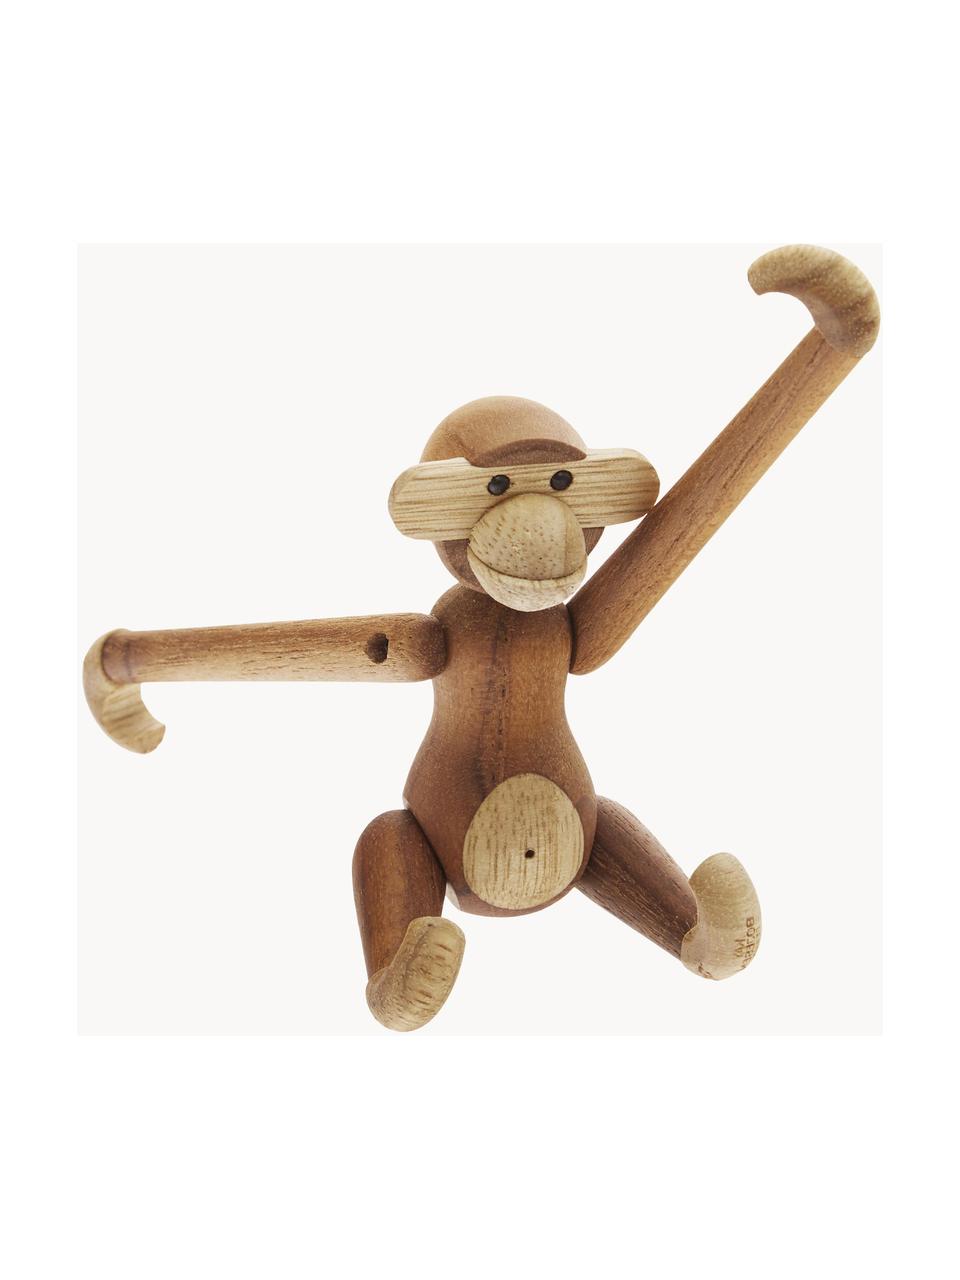 Handgefertigtes Deko-Objekt Monkey aus Teakholz, H 10 cm, Teakholz, Limbaholz, lackiert, FSC-zertifiziert, Teakholz, Limbaholz, B 10 x H 10 cm